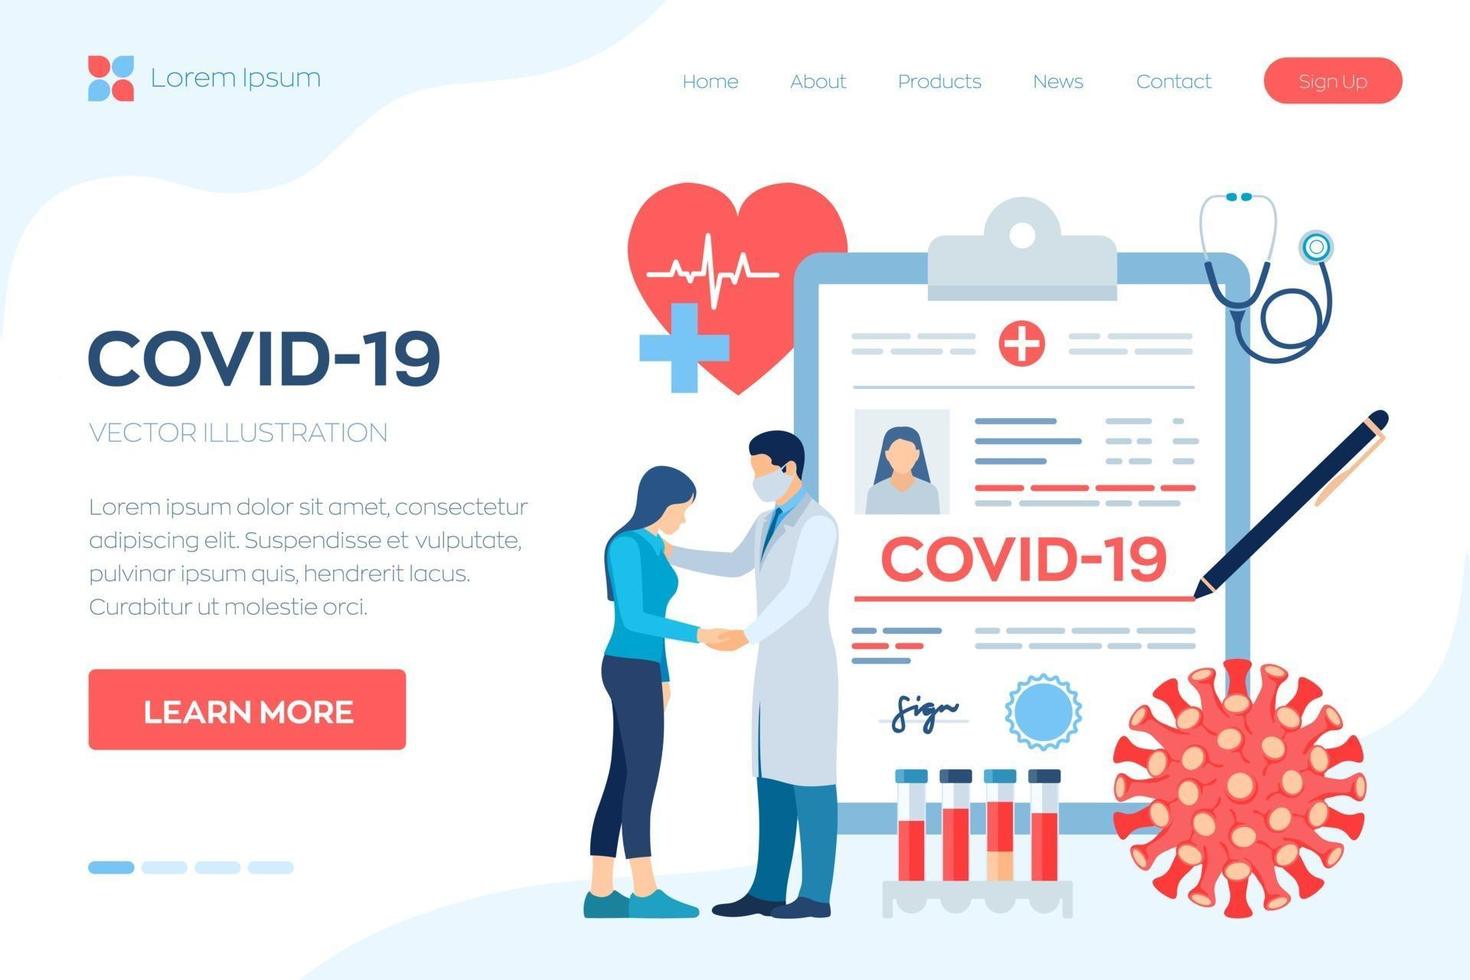 diagnóstico médico - coronavirus 2019-ncov. concepto médico de covid-19. médico cuidando al paciente. síntomas de coronavirus. Infección de los pulmones. peligroso riesgo pandémico del virus corona. vector